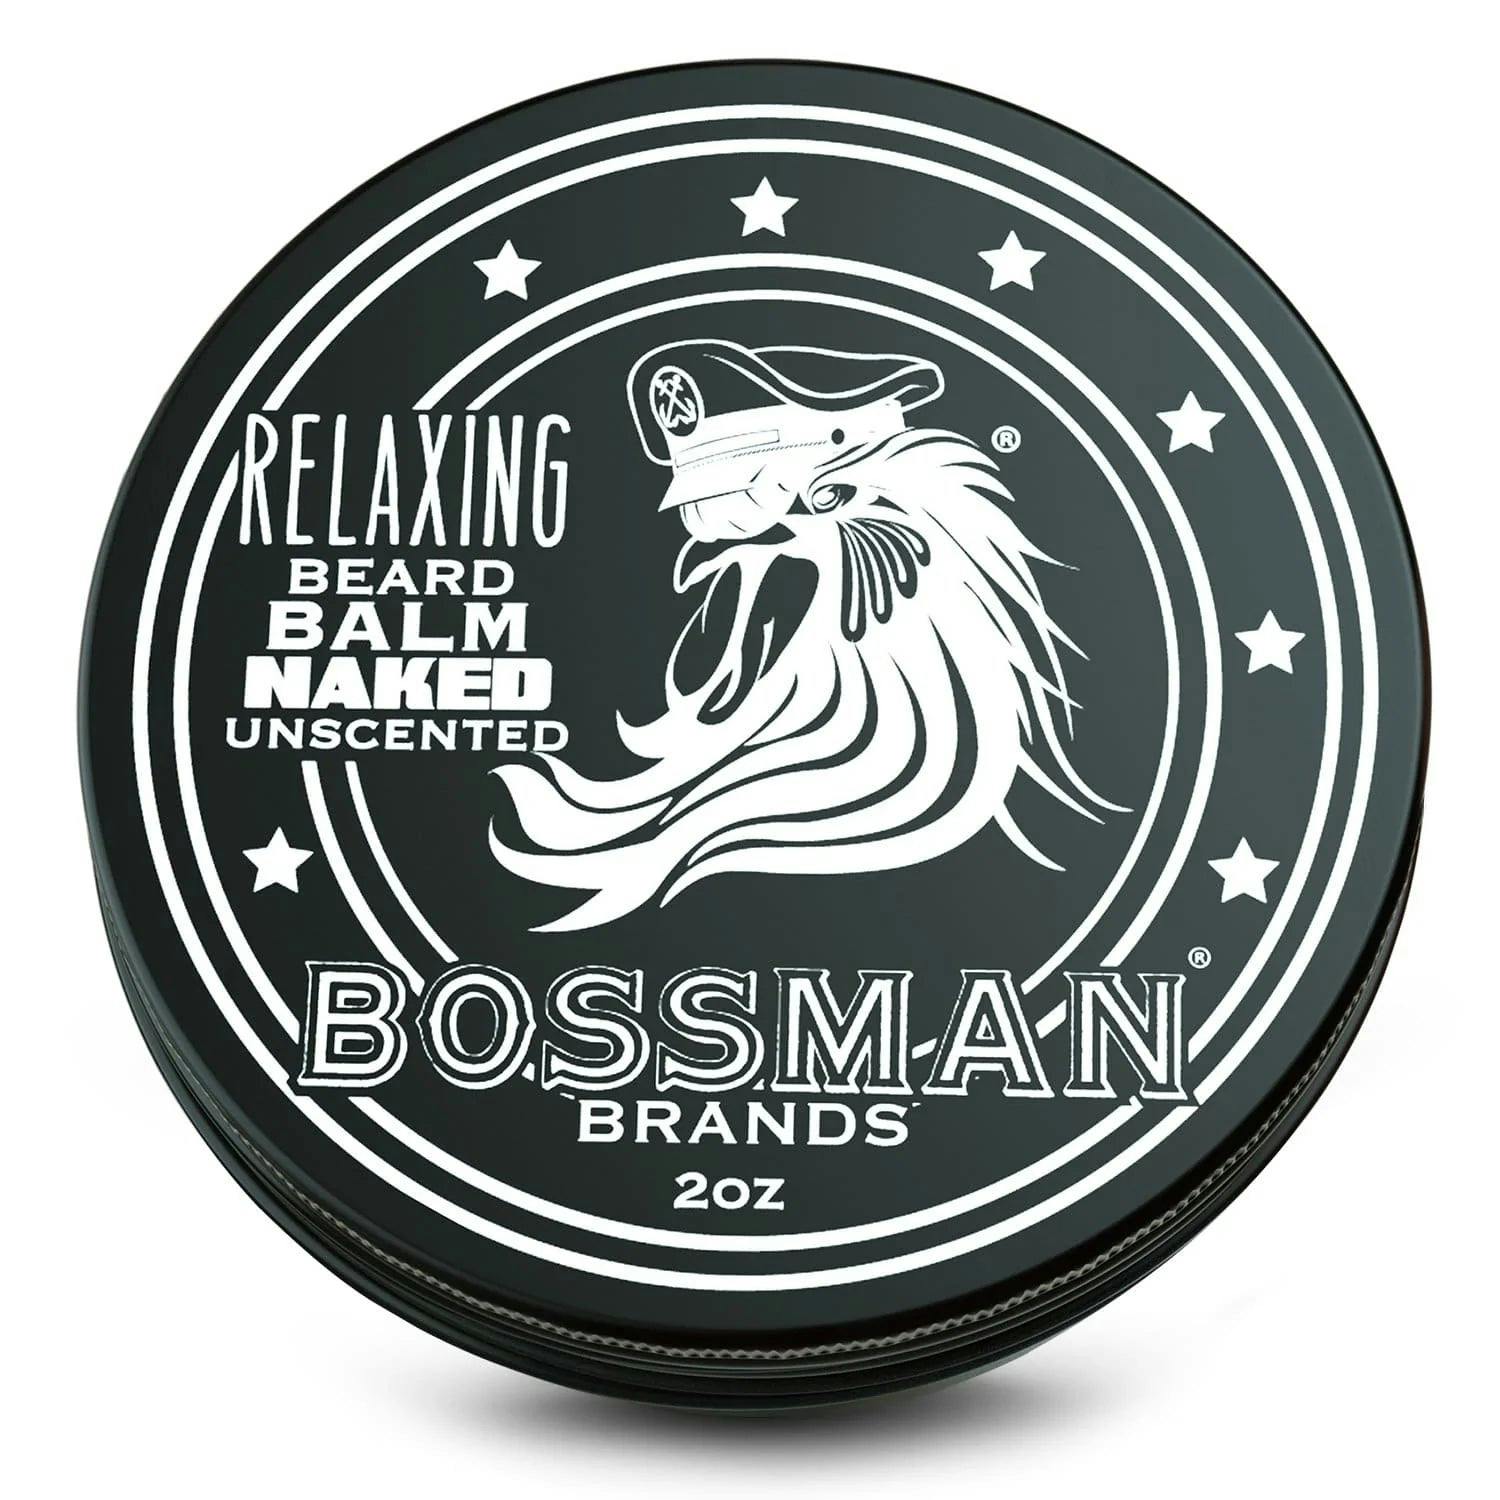 Bossman Relaxing Beard Balm - Naked Scent 57g